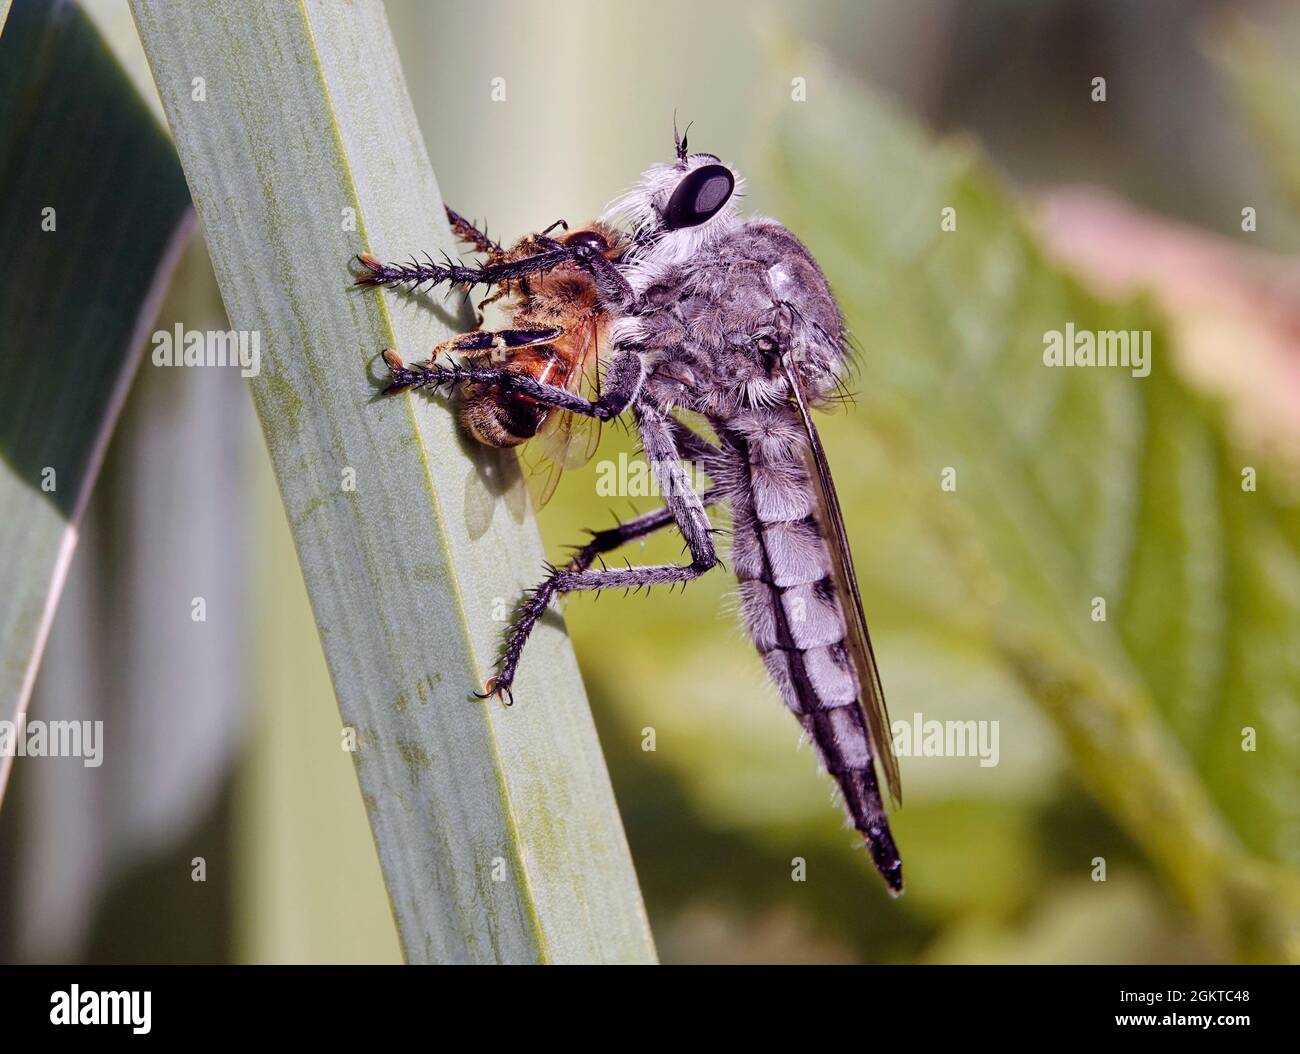 Ritratto di una mosca rapina o assassino volare, Promaco princeps, nutrendo su un'ape miele. Sono i predatori apici del mondo degli insetti. Foto Stock